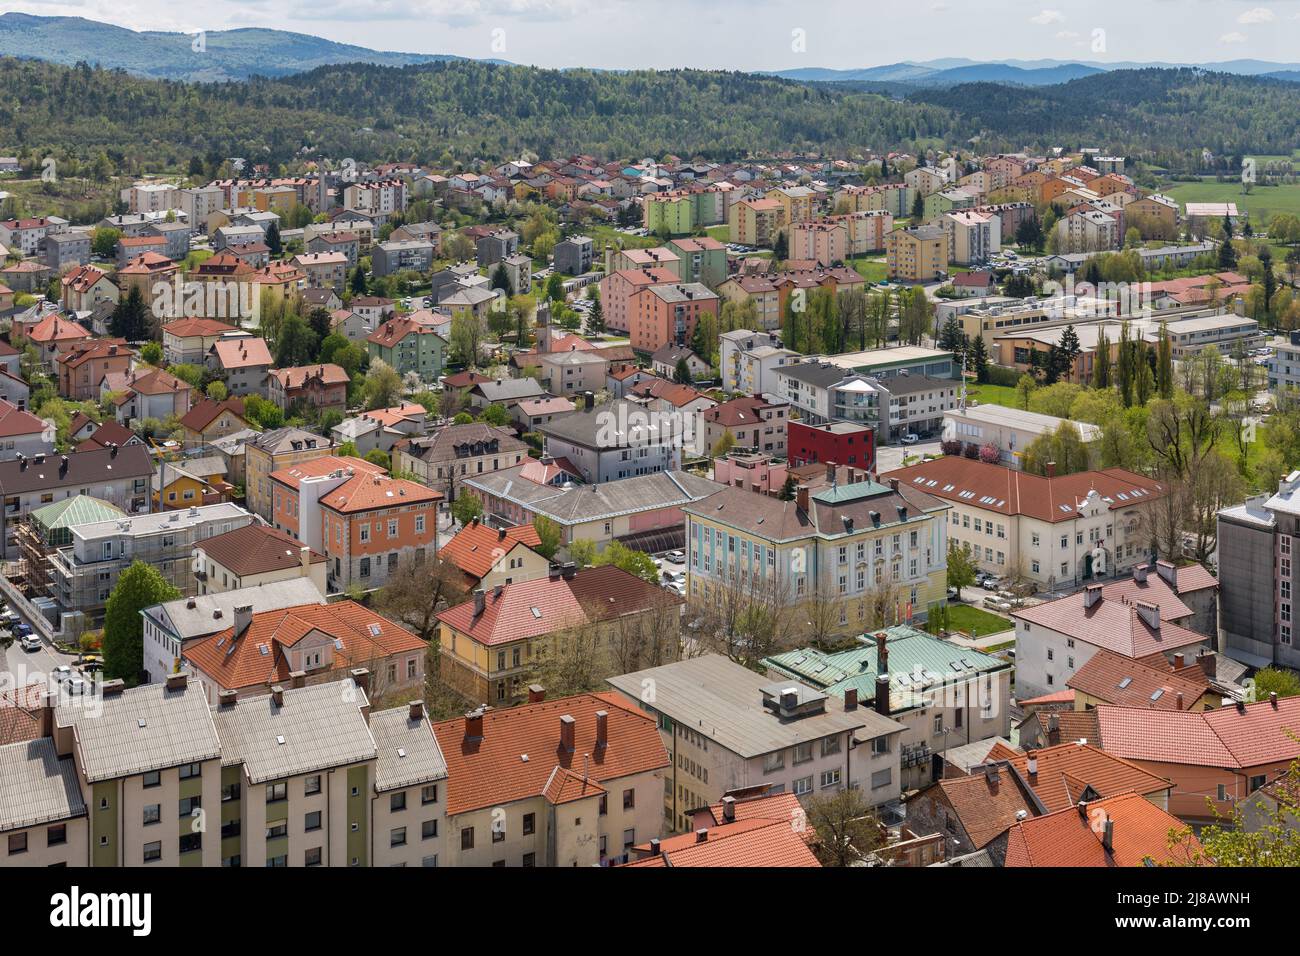 Aerial view of Postojna, Slovenia Stock Photo